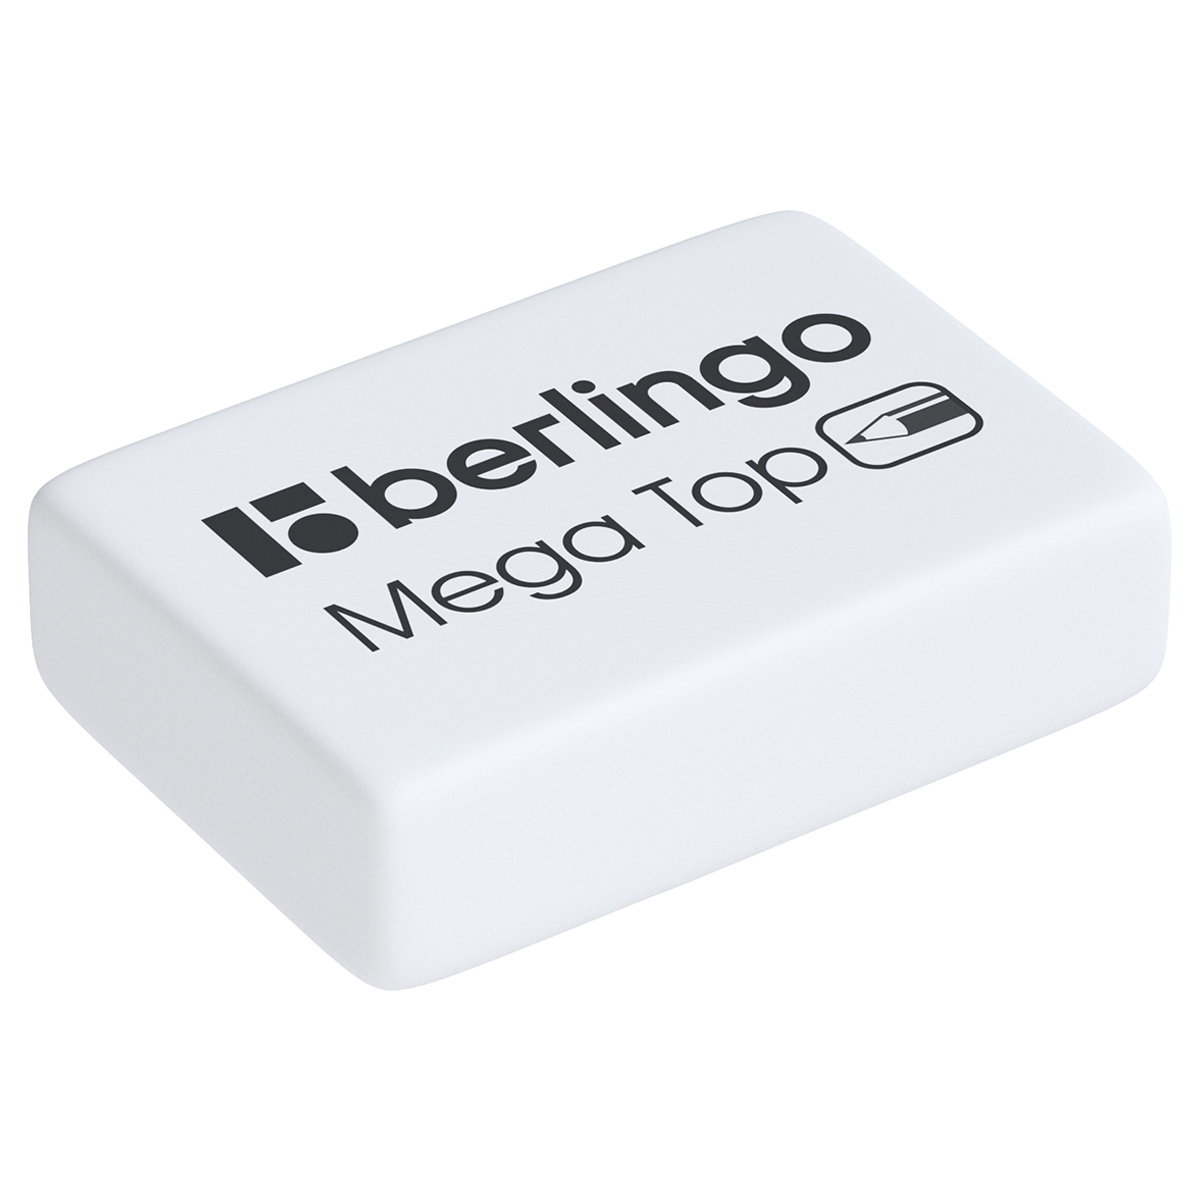 Ластик Berlingo Mega Top, прямоугольный, натуральный каучук, 26*18*8мм (Вид 1)